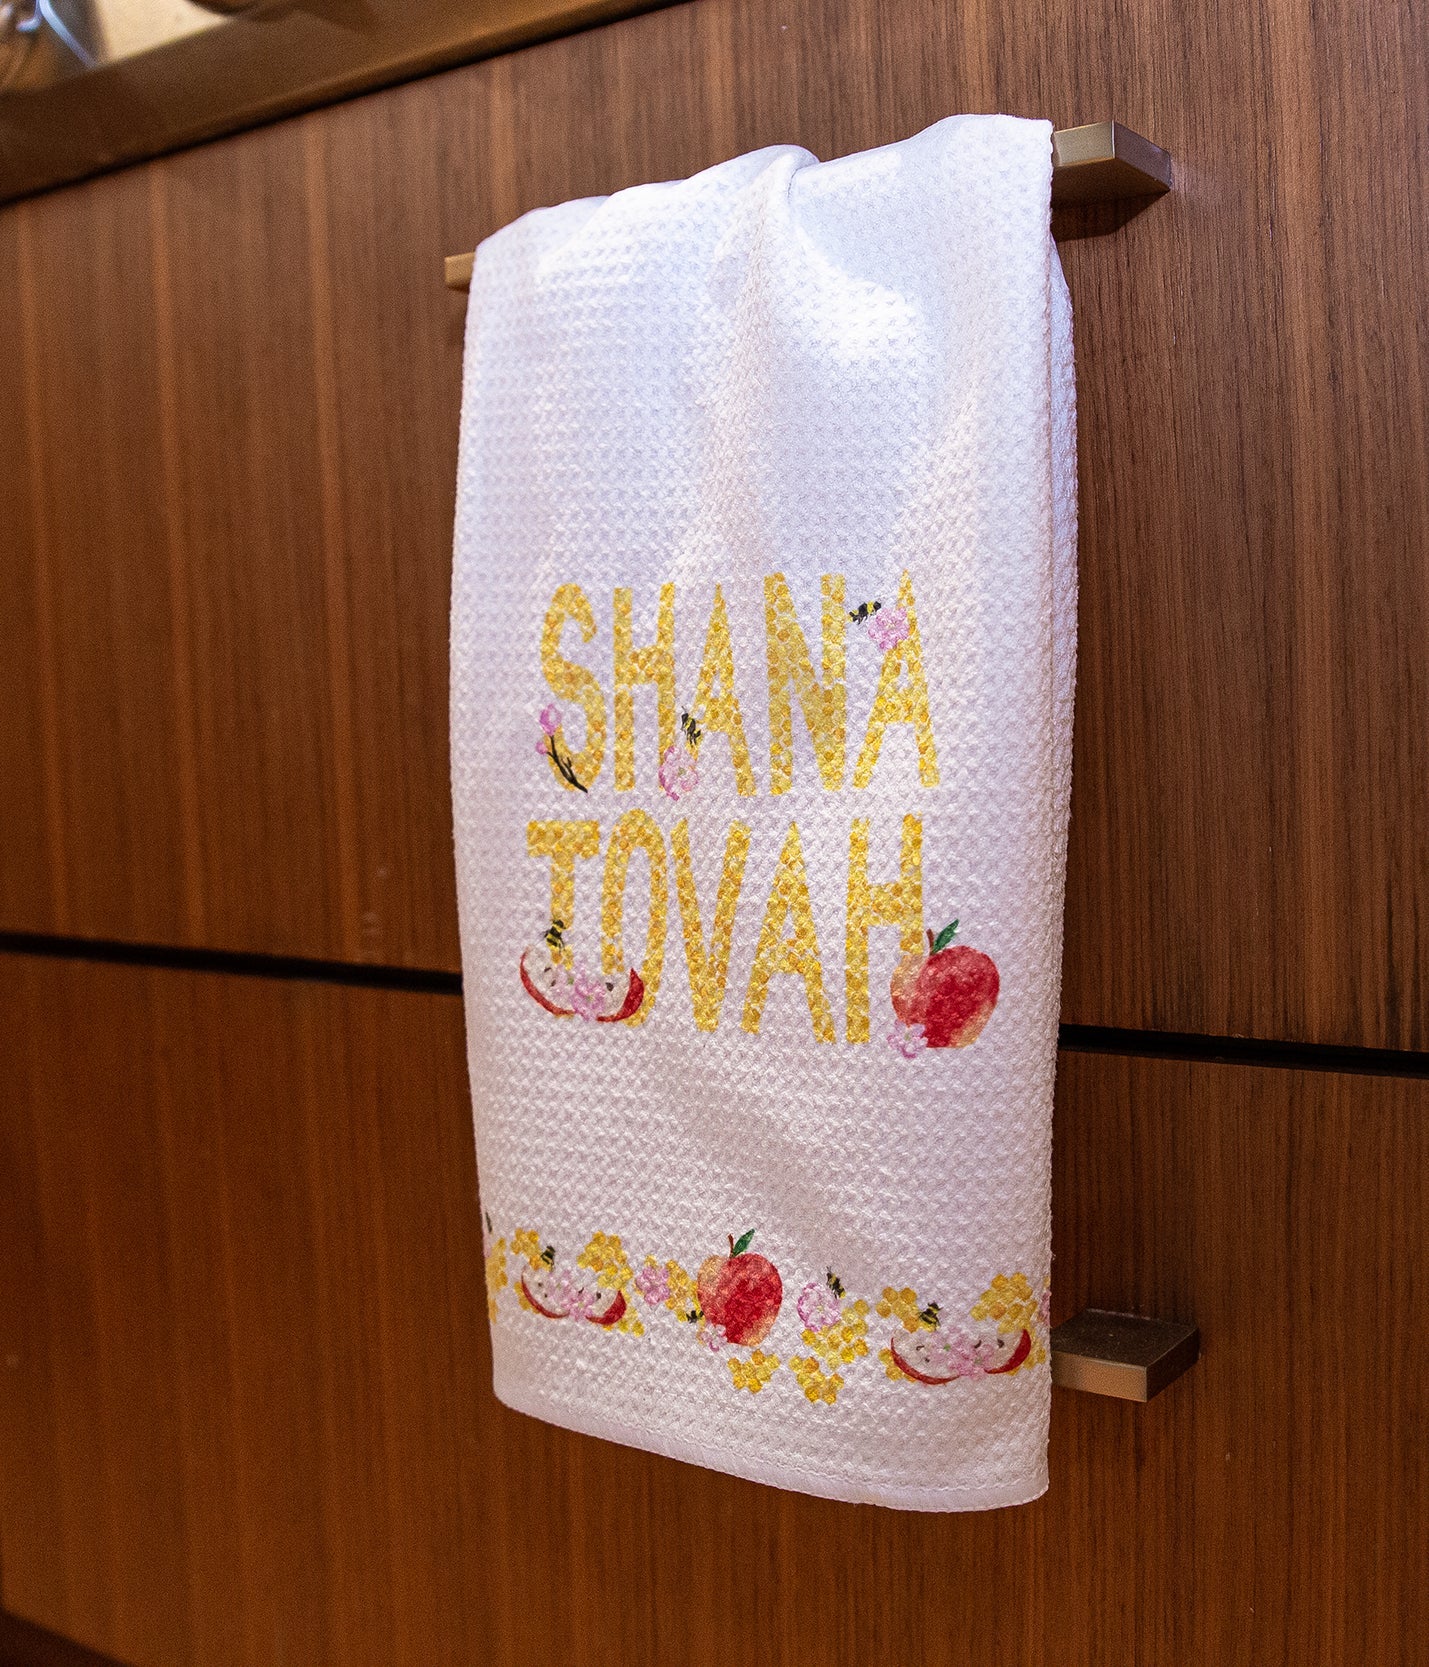 Shana Tovah Waffle Weave Hand Towel